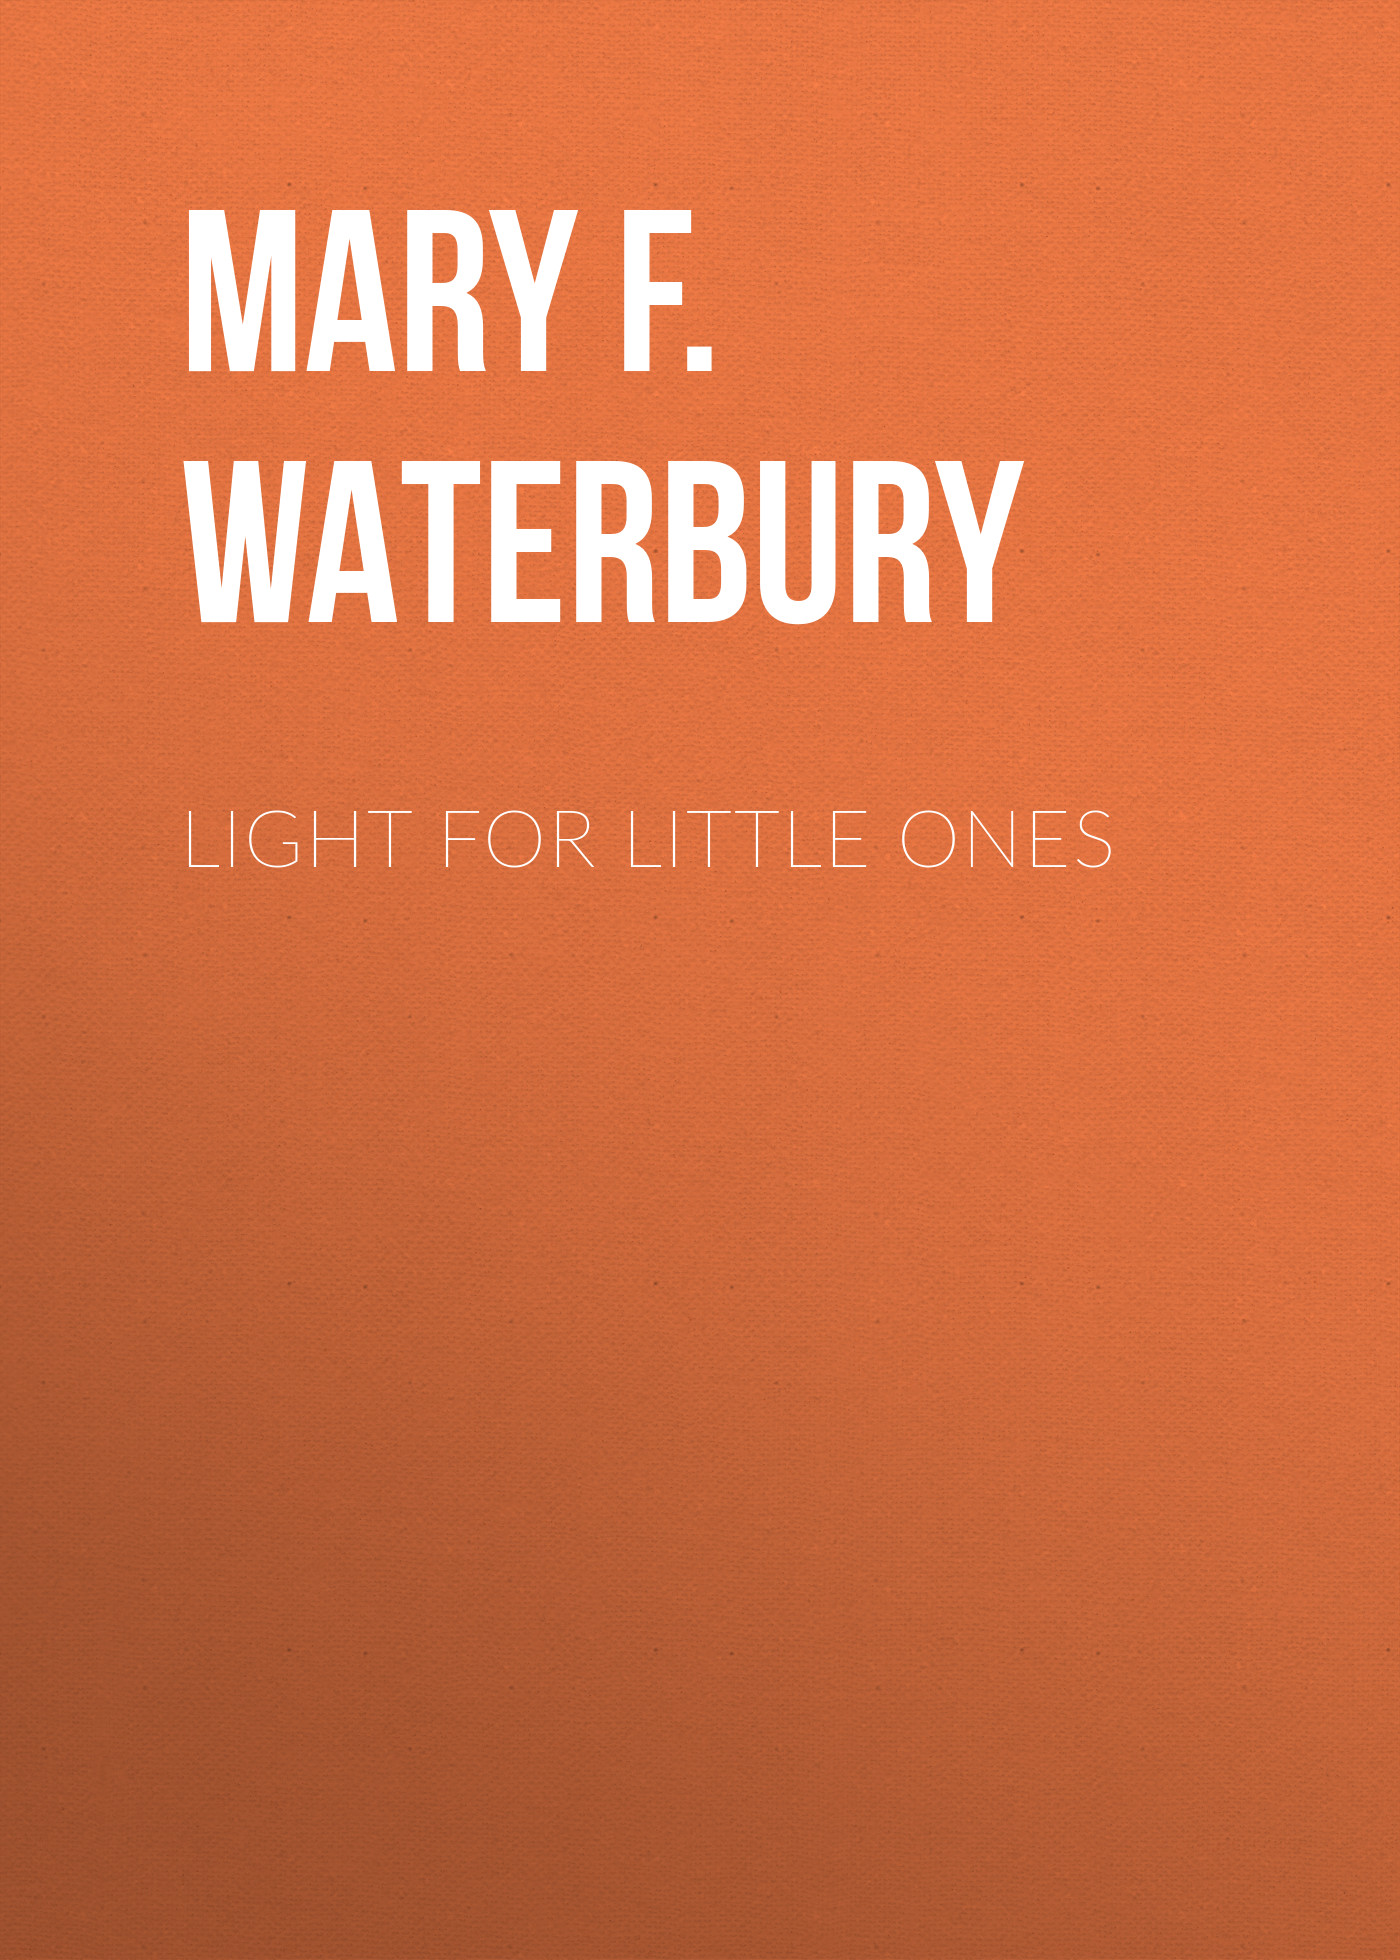 Книга Light for Little Ones из серии , созданная Mary F. Waterbury, может относится к жанру Зарубежные детские книги, Зарубежная эзотерическая и религиозная литература, Зарубежная старинная литература, Зарубежная классика. Стоимость электронной книги Light for Little Ones с идентификатором 34336474 составляет 0 руб.